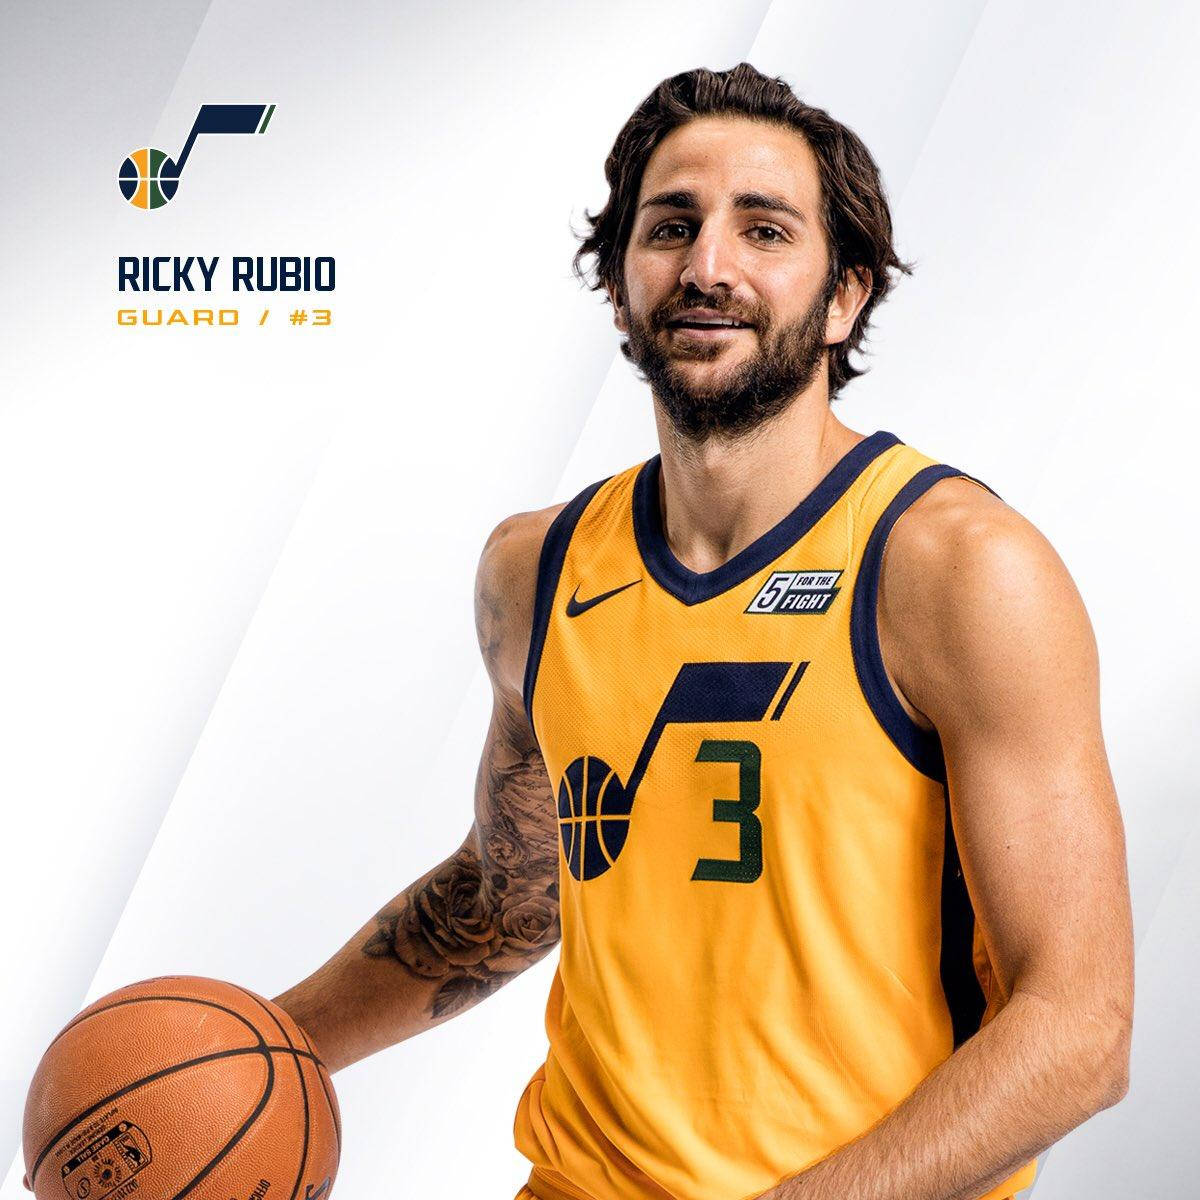 Utah Jazz Ricky Rubio Portrait Background